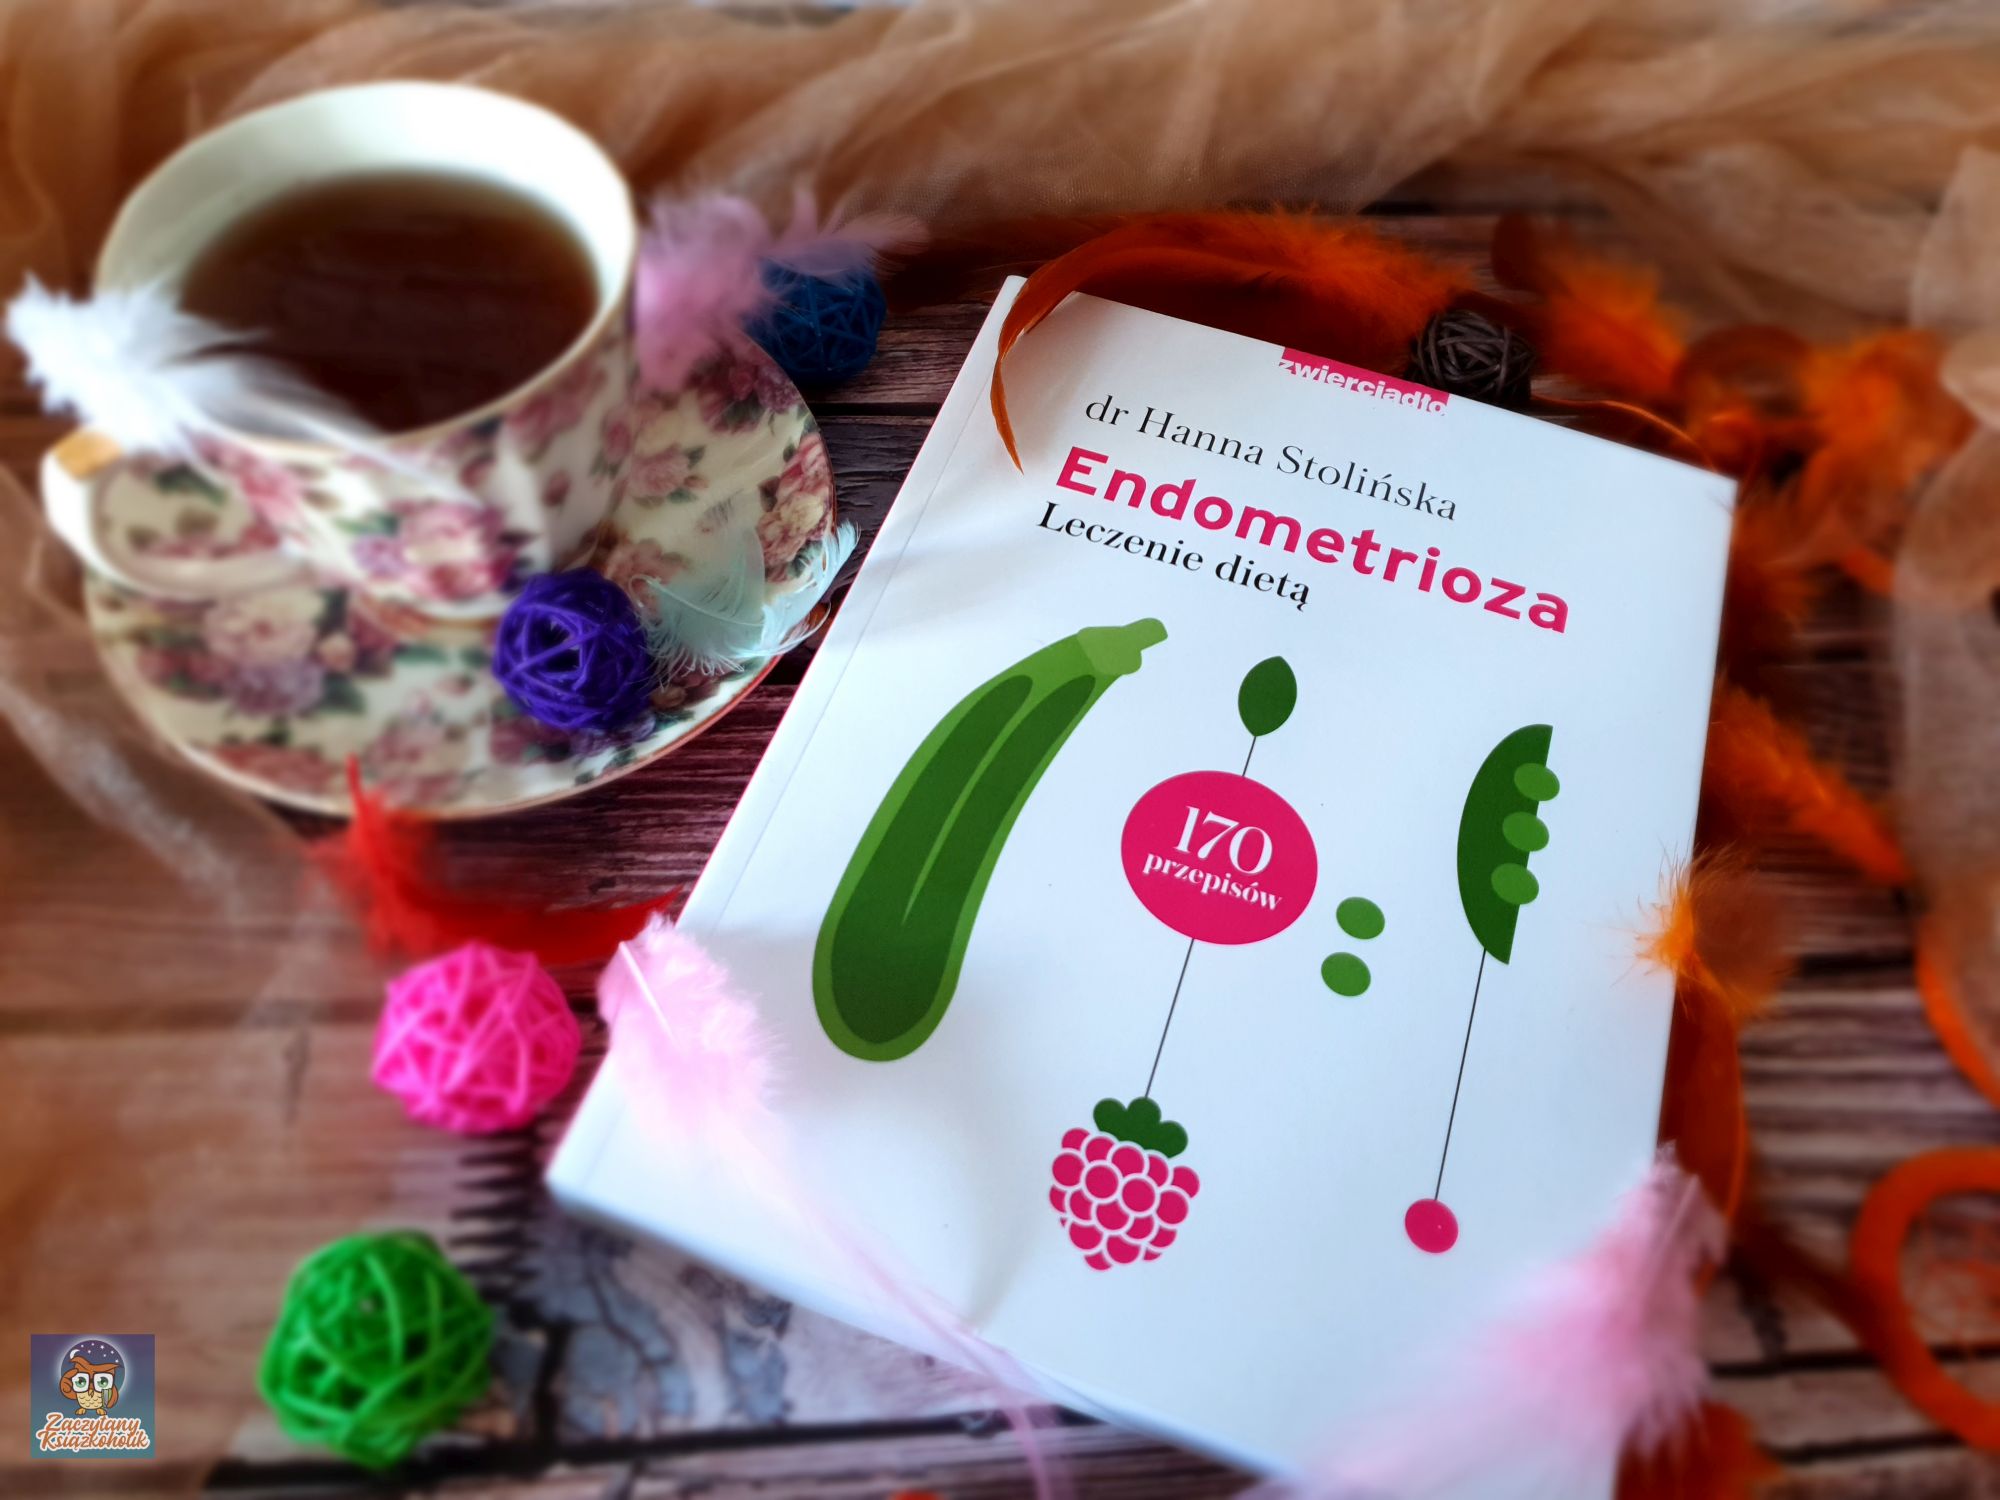 Endometrioza, leczenie dietą, zaczytanyksiazkoholik.pl, Hanna Stolińska